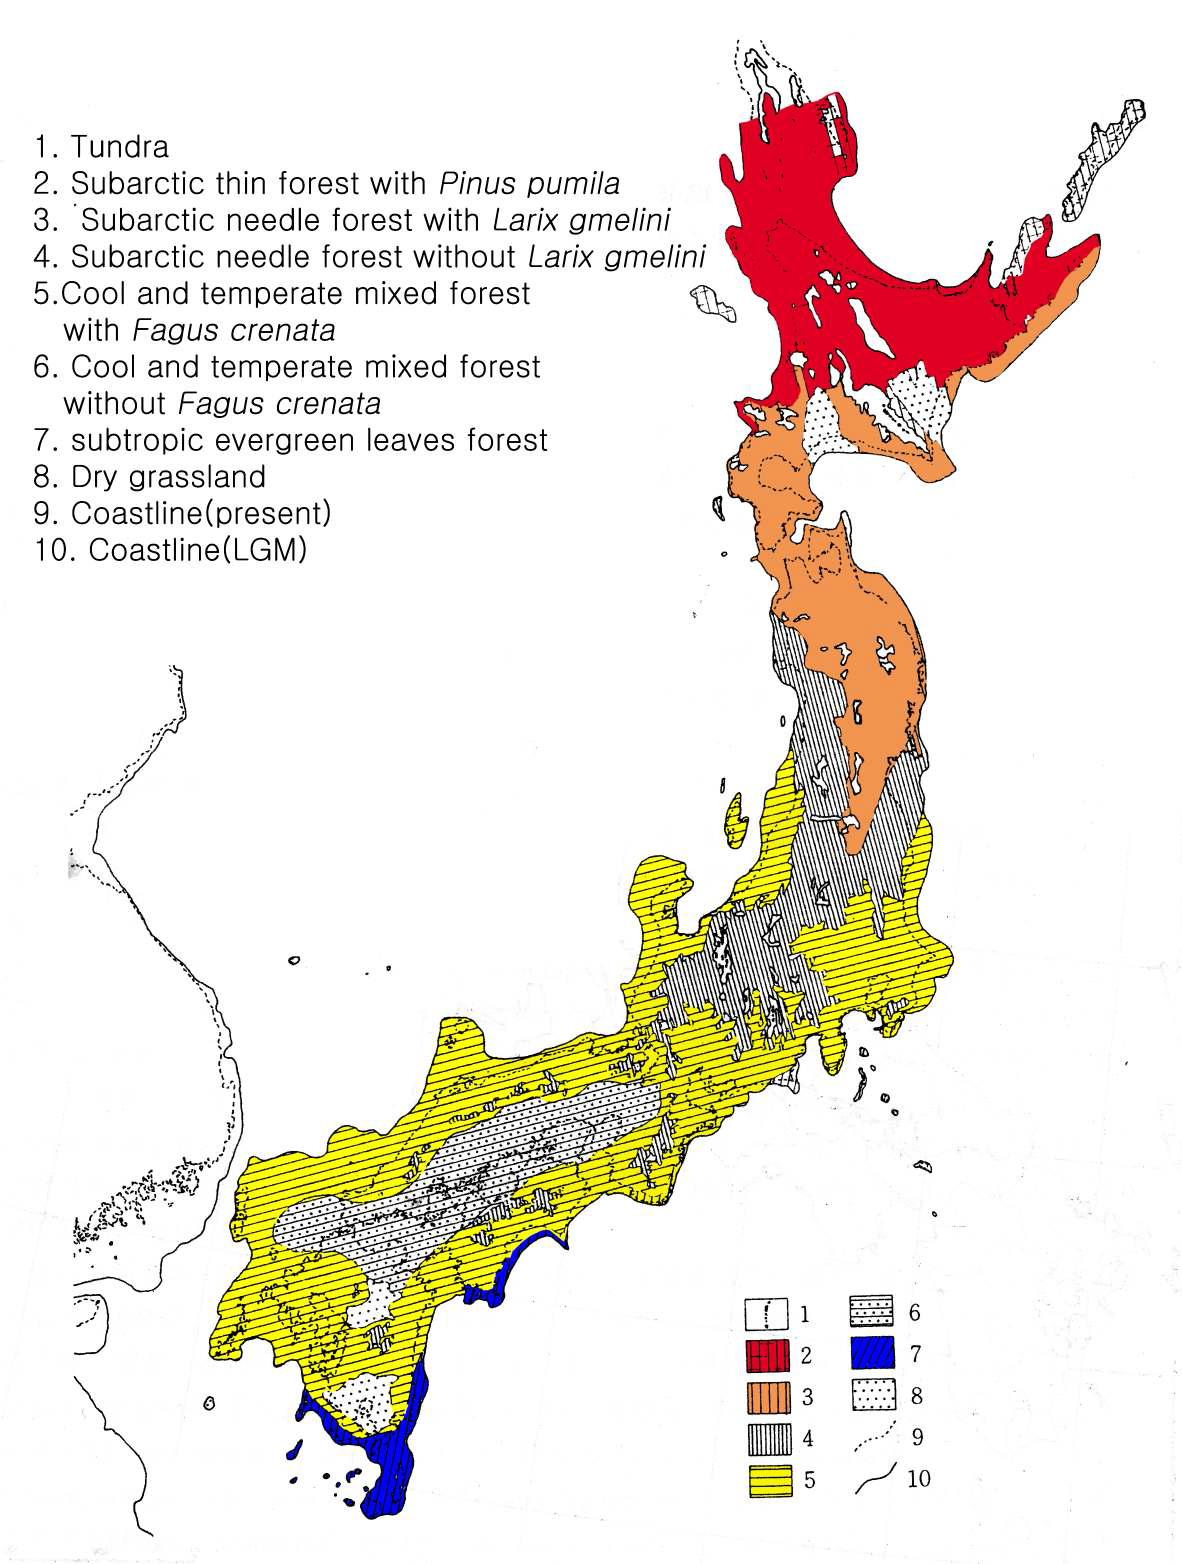 18,000년 전 일본의 식생분포